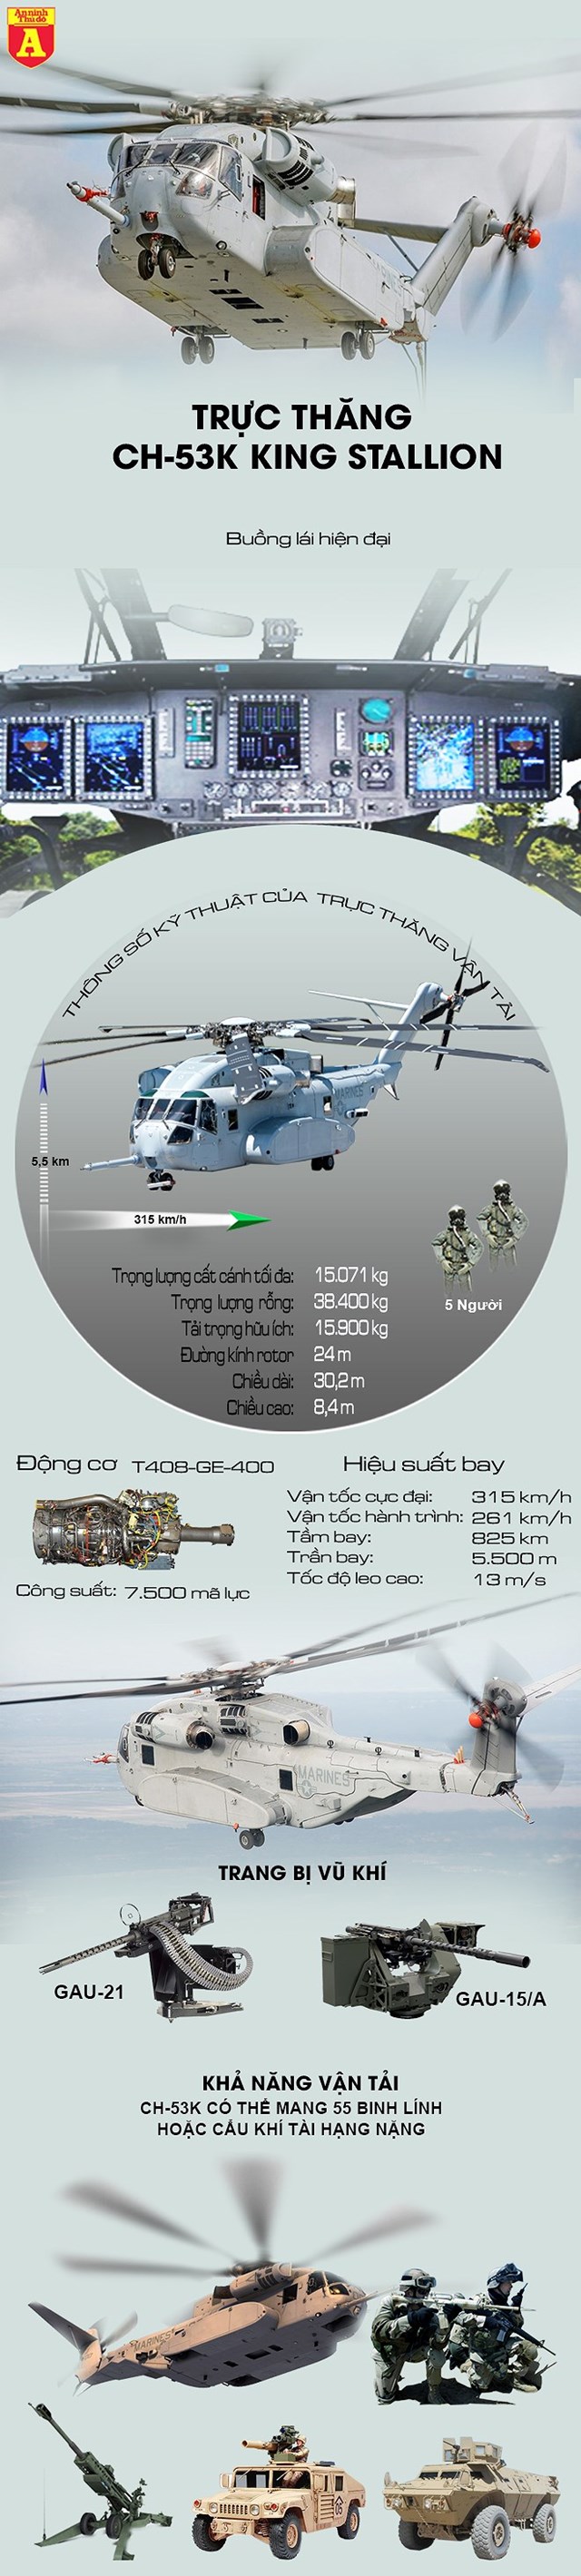 [Infographics] Sức mạnh kinh hoàng của "quái thú" CH-53K Mỹ - Ảnh 1